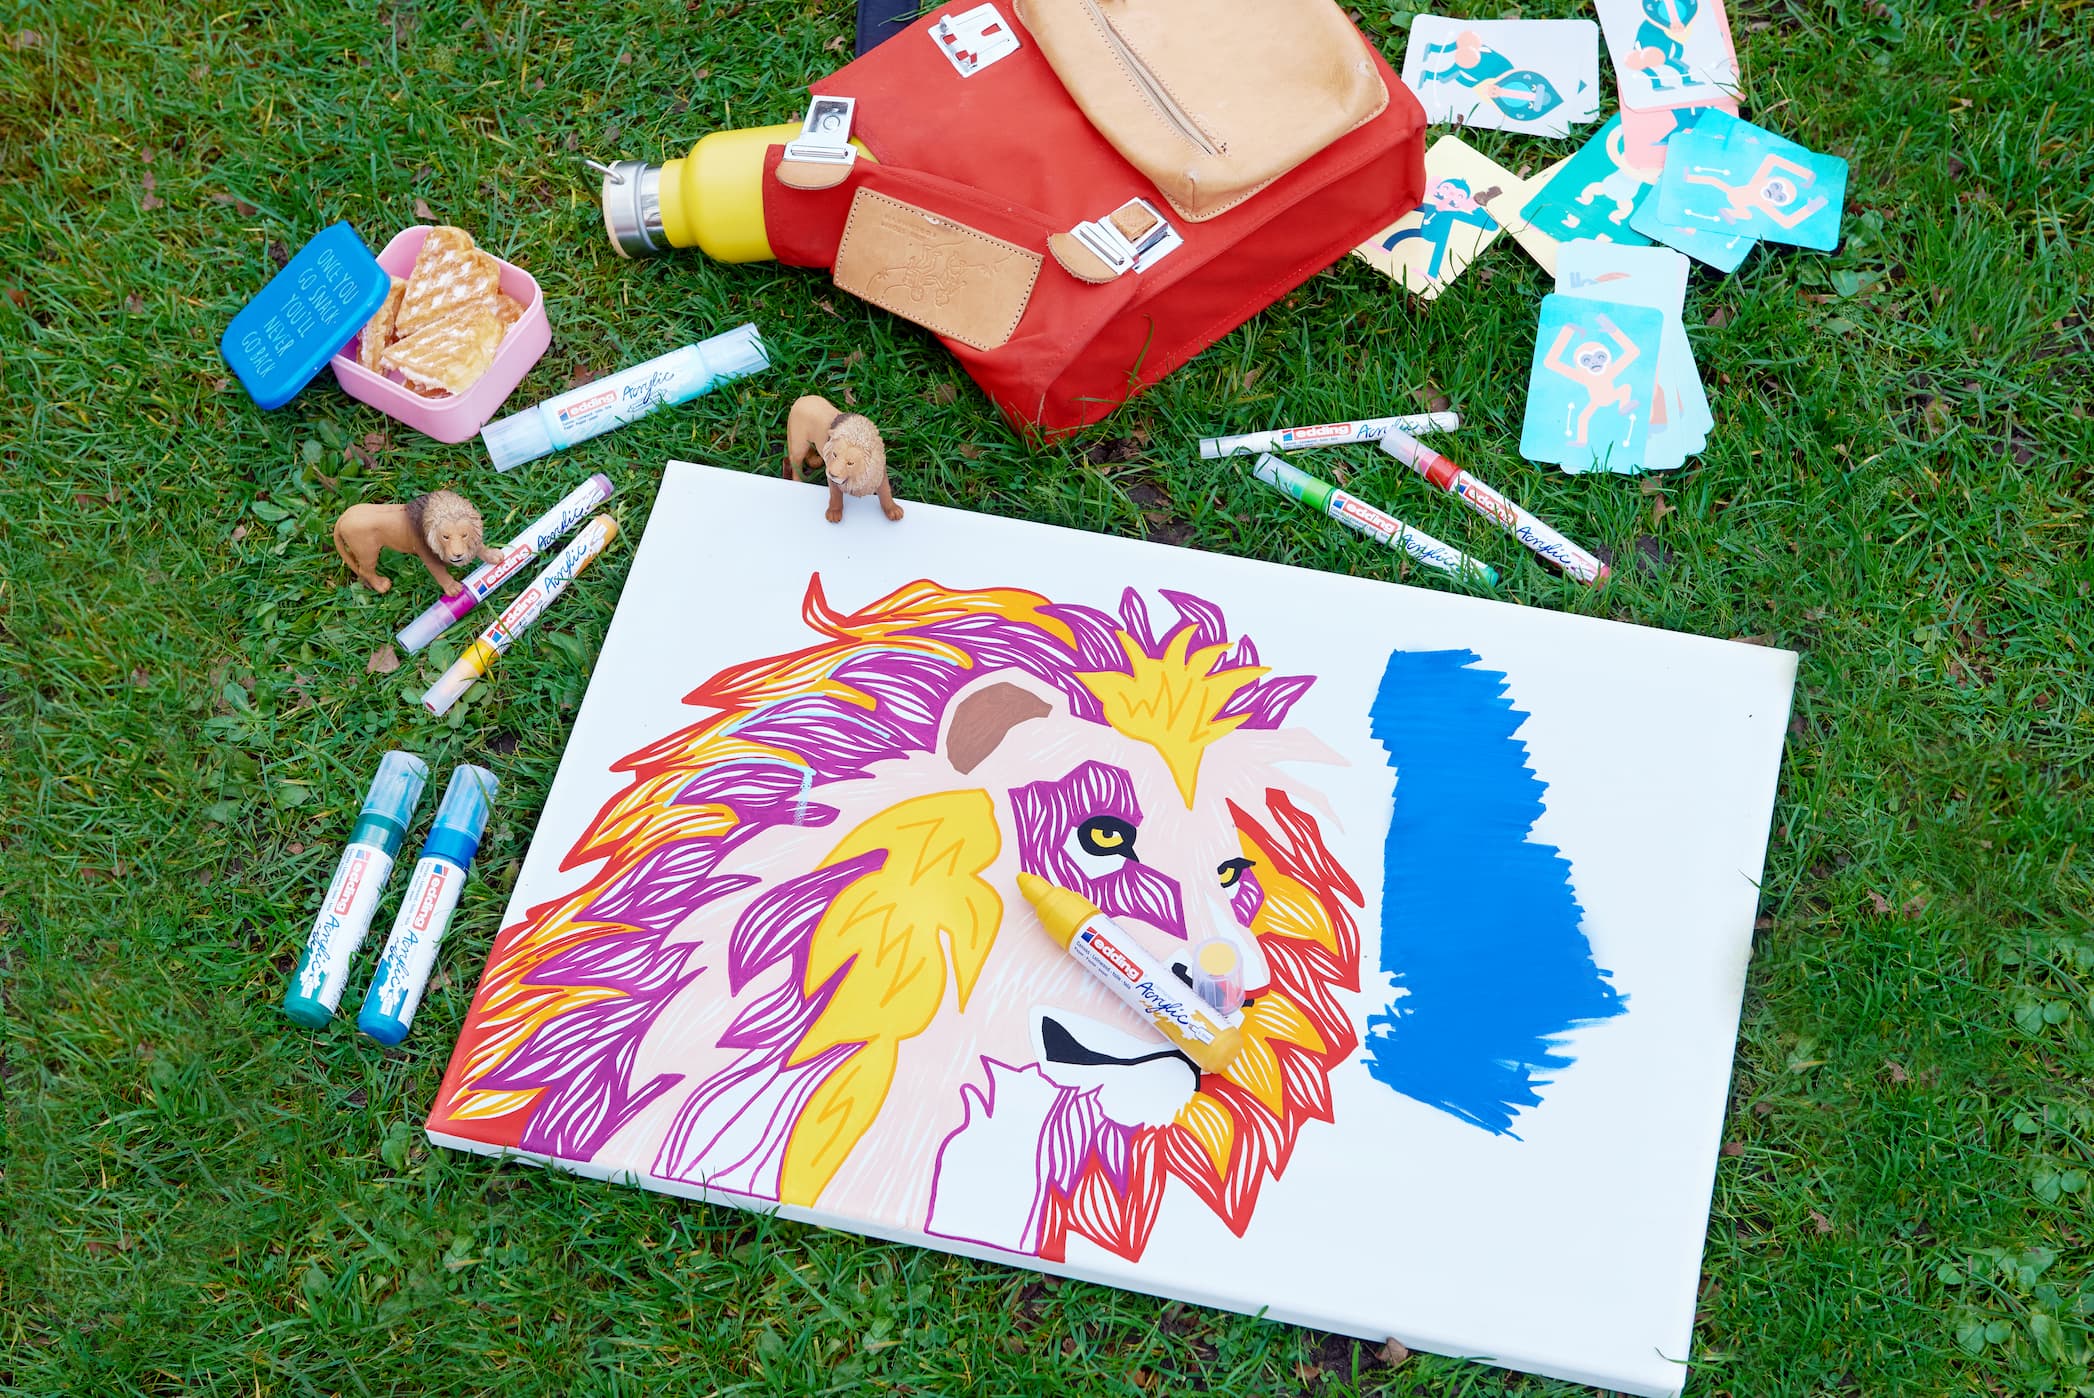 Im Gras verstreute Künstlerutensilien rund um ein unvollendetes, lebendiges Gemälde eines Löwengesichts, gemalt mit hochpigmentierter Tinte und einem edding 5000 Acrylmarker breit.